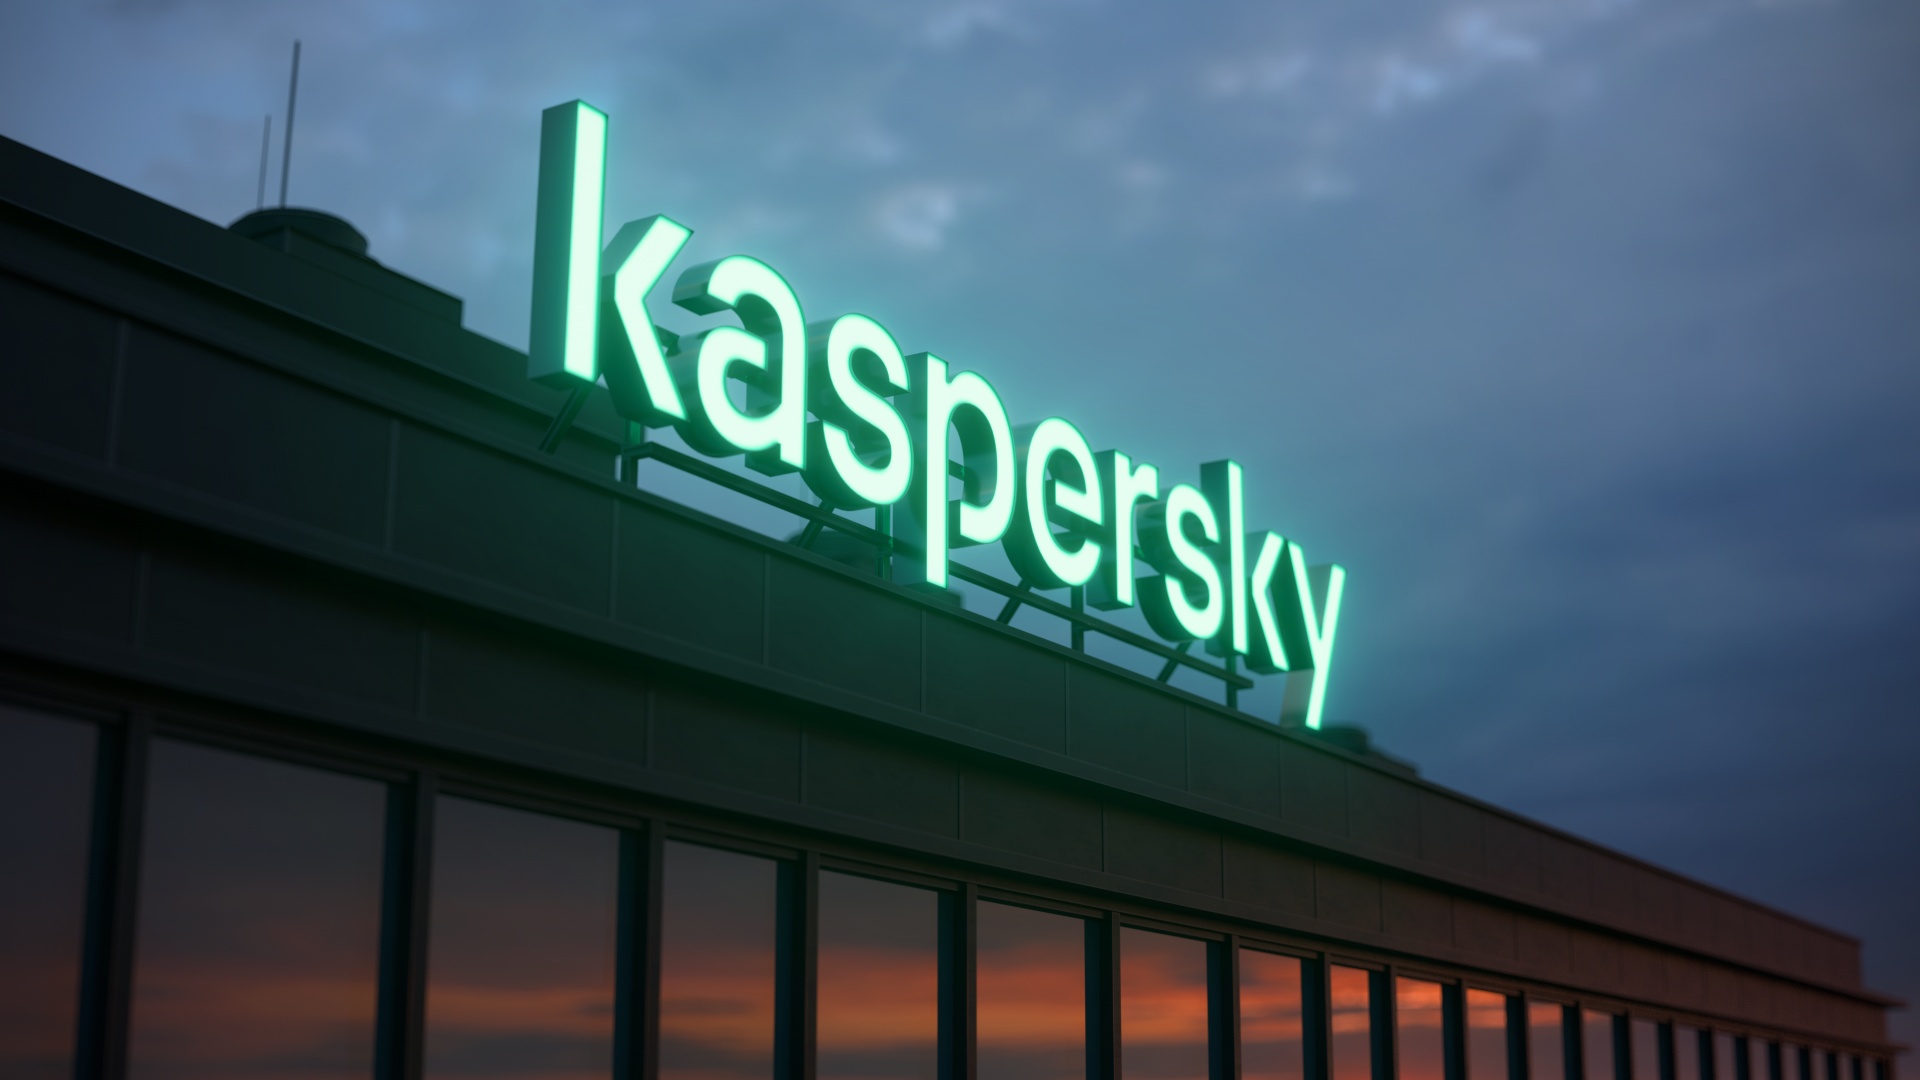 Kaspersky öz bulud həllinin təkmilləşdirilmiş versiyasını təqdim edib